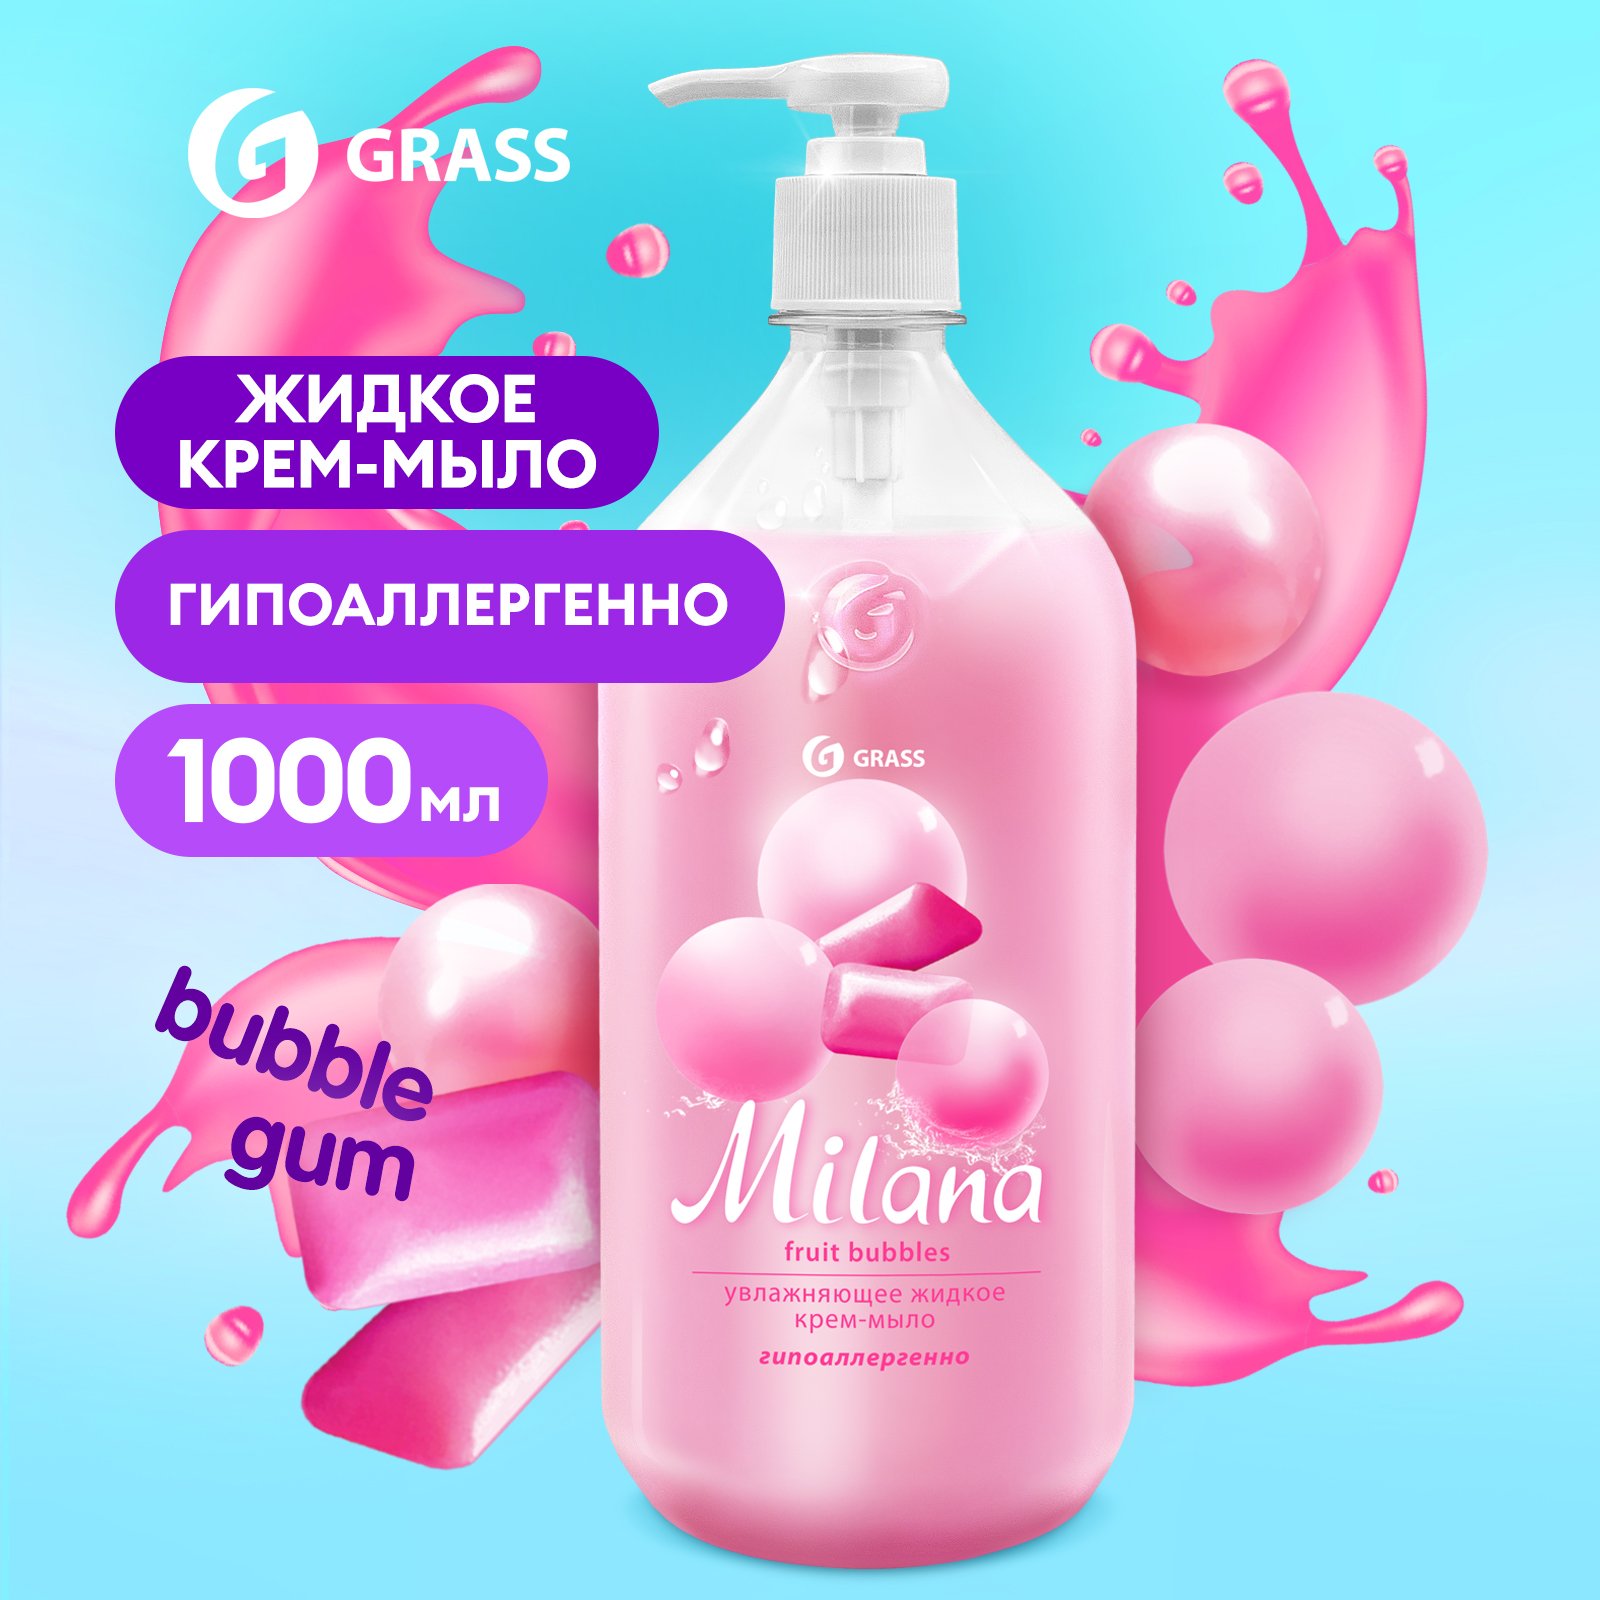 Мыло жидкое для рук Grass Milana Fruit Bubbles туалетное, густое, гипоаллергенное 1 л мыло жидкое для рук grass milana fruit bubbles туалетное густое гипоаллергенное 5 л